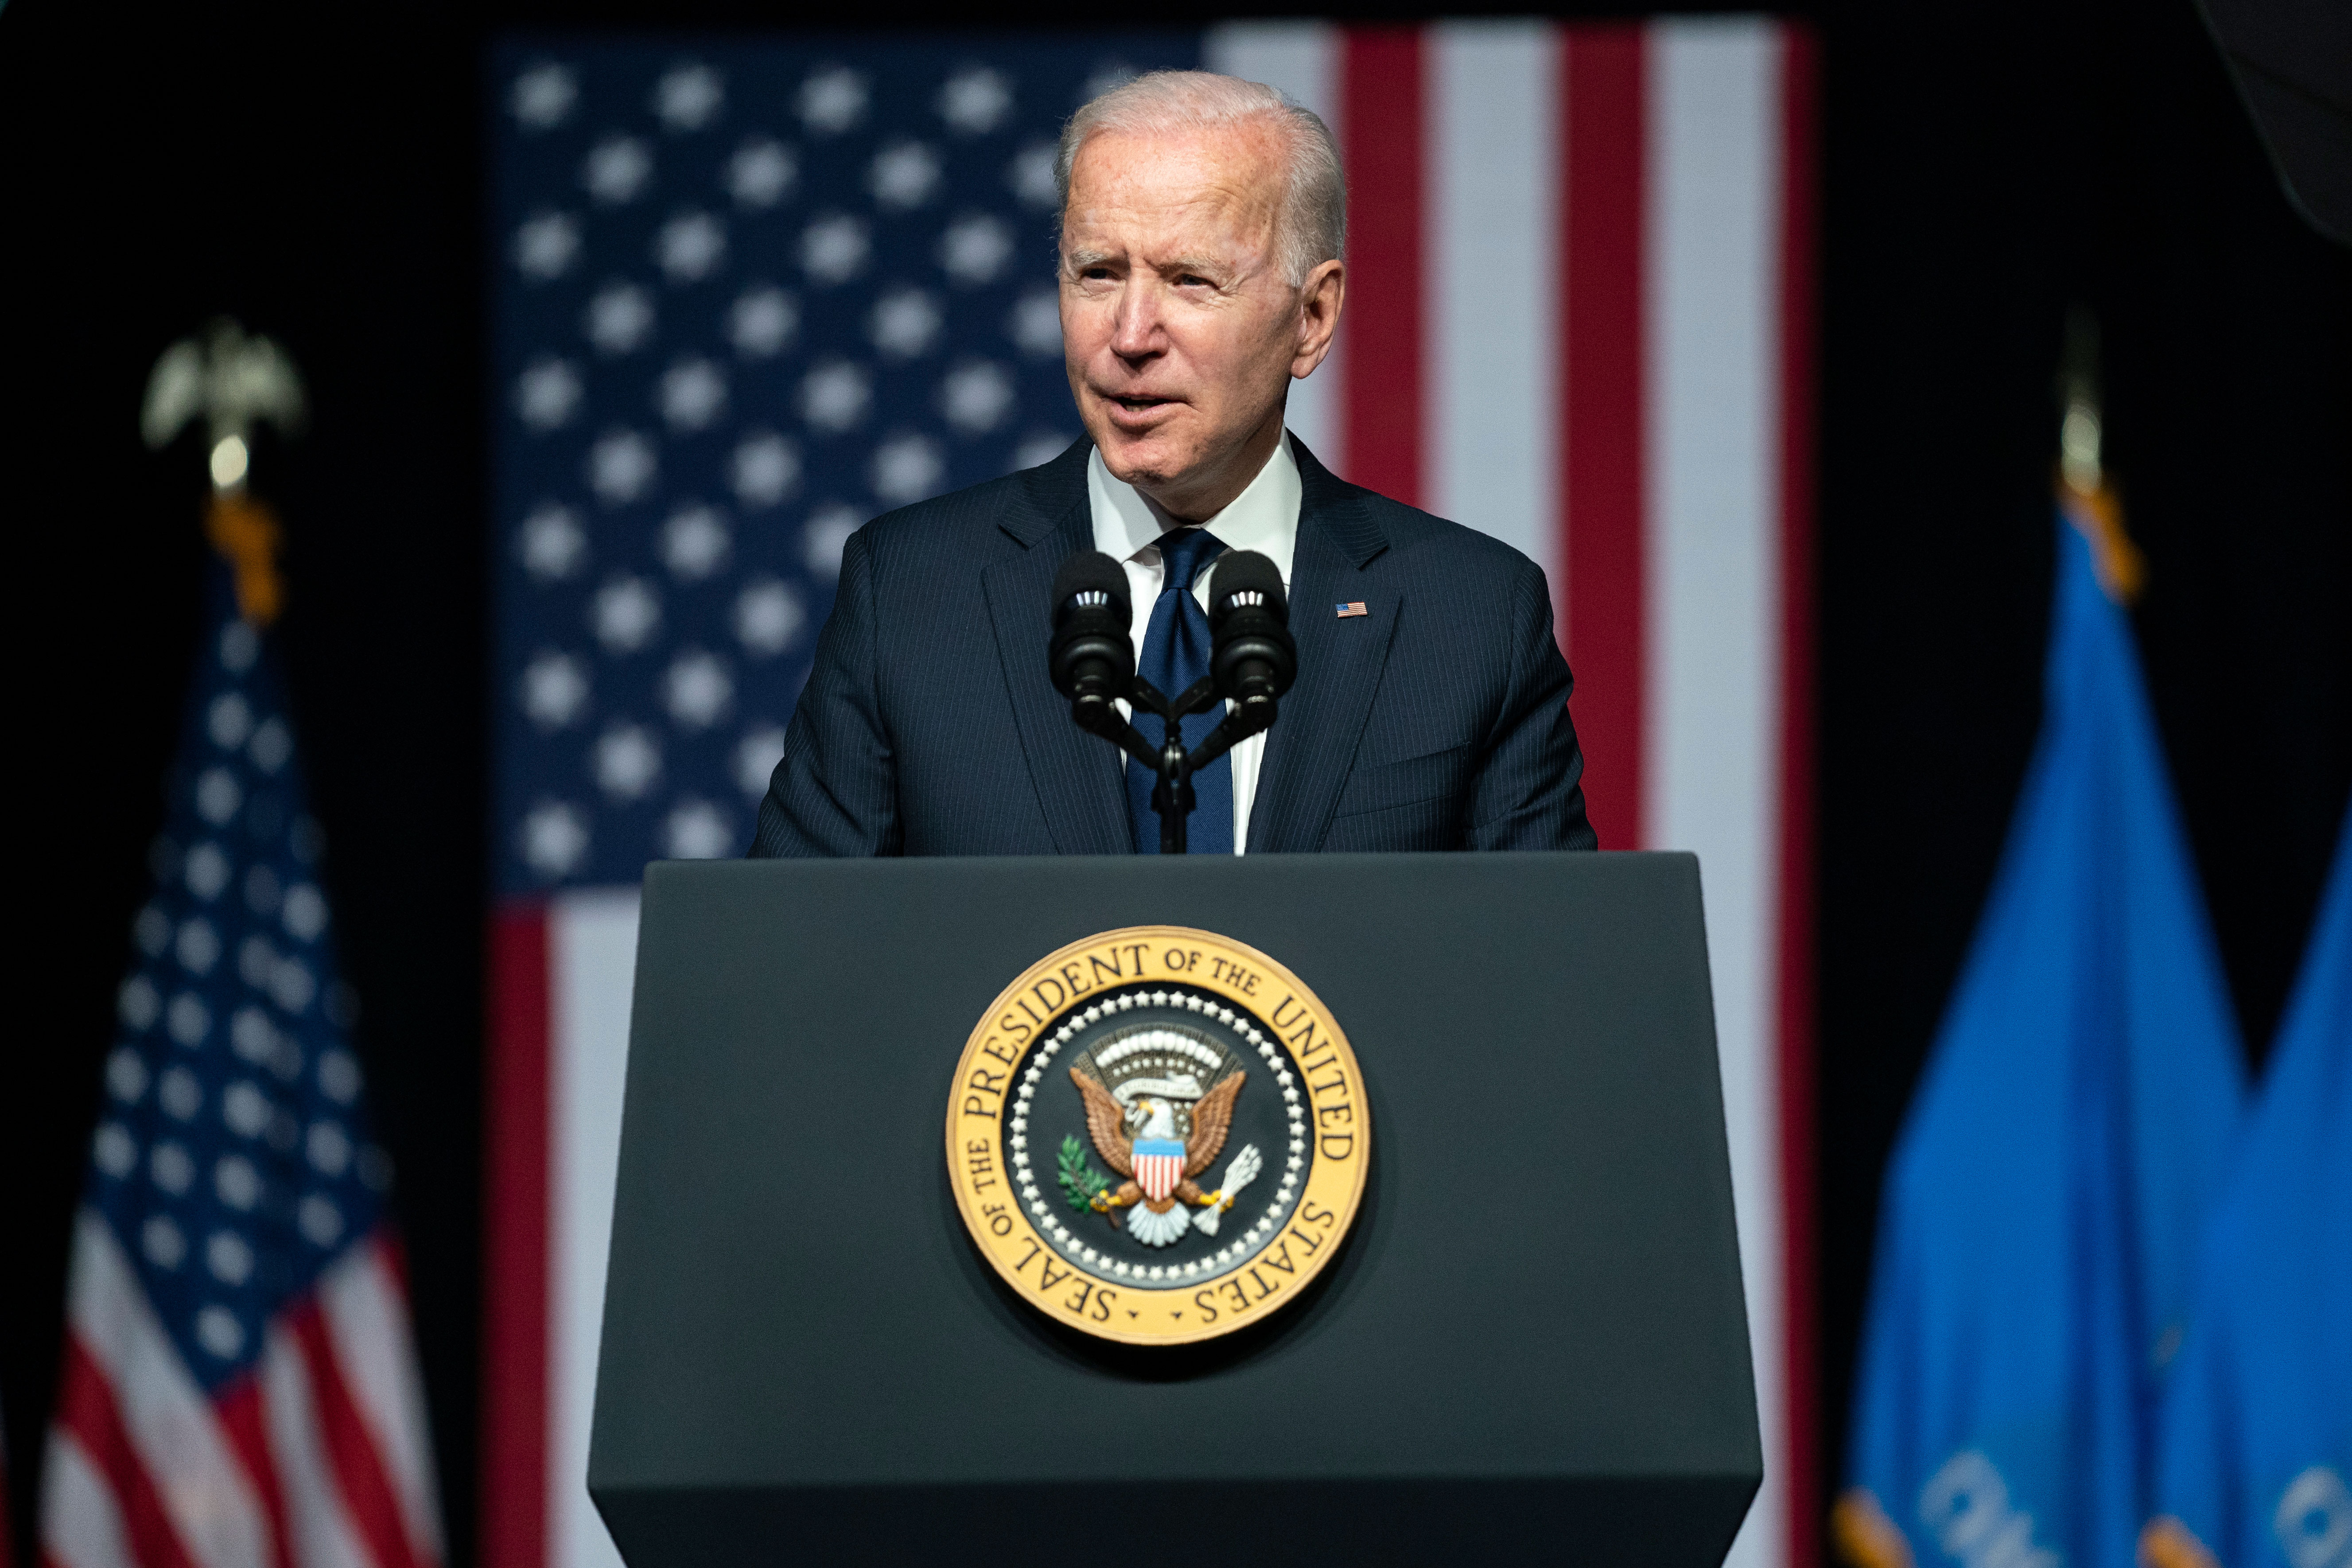 President Joe Biden speaks on June 1 in Tulsa, Oklahoma.